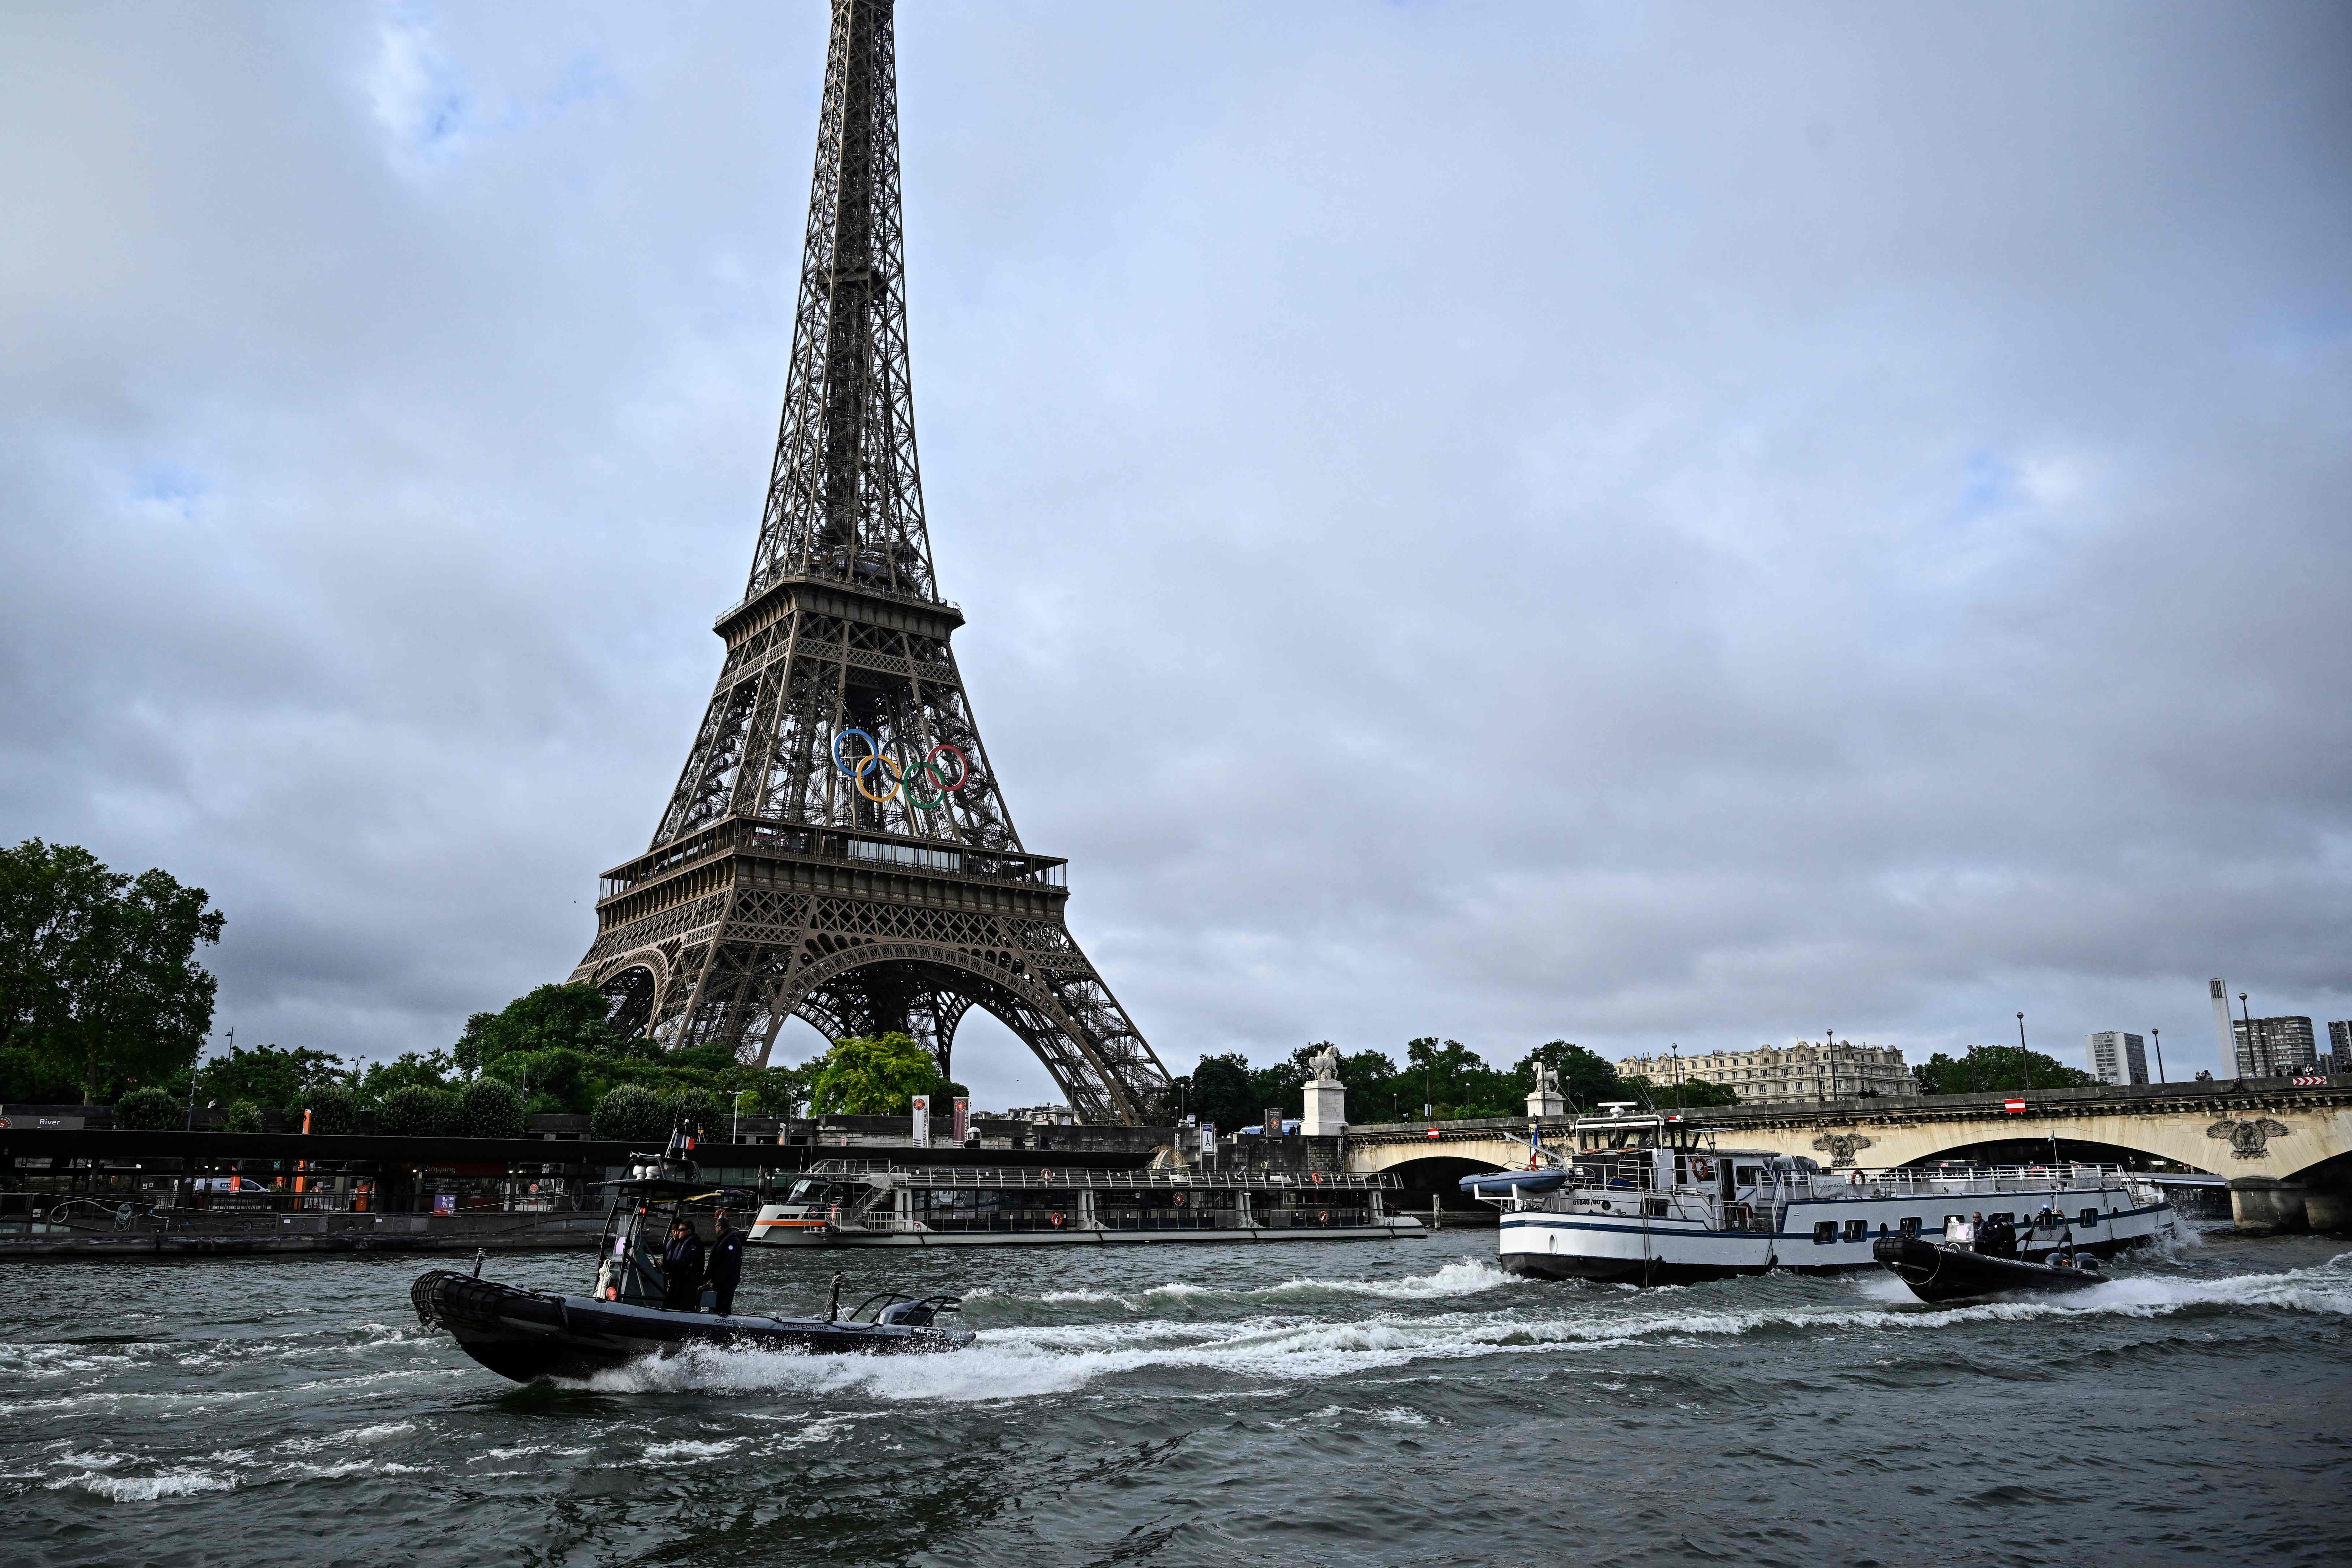 距离法国巴黎奥运开幕仅剩不到1个月，赛事预定场地塞纳河水质检测仍未达标。法新社